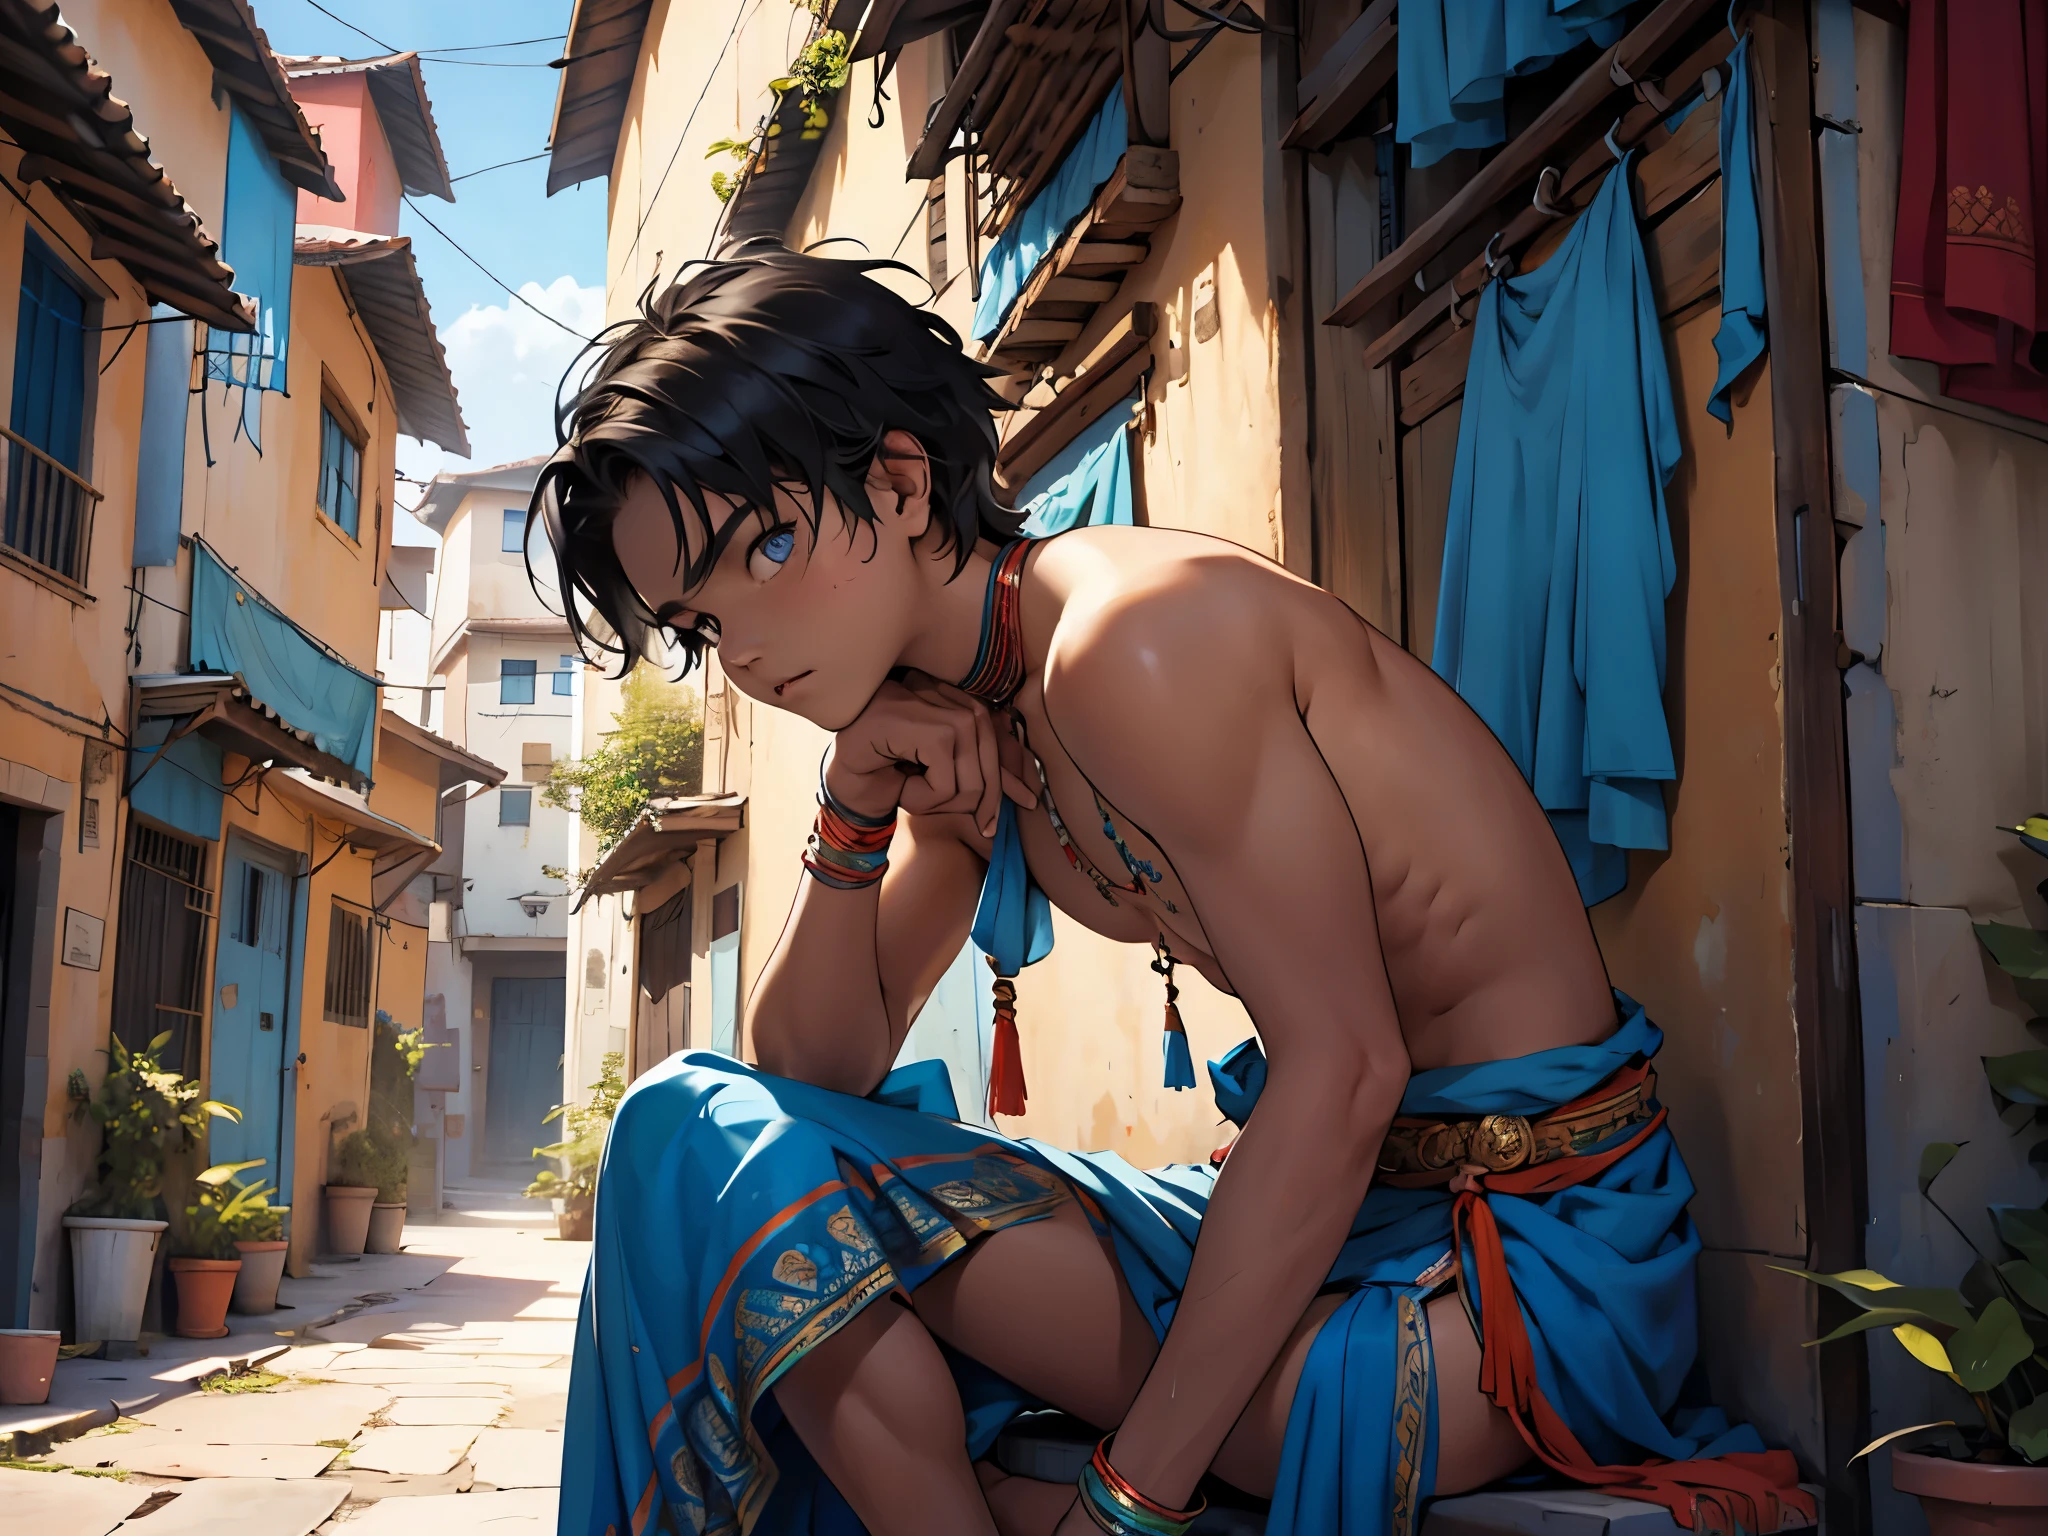 16-летний мальчик странно одет в одежду индейского племени.., Волосы у него голубые, глаза голубые, он стоит на крыше интерната, на террасе смотрит на город, он растерян, несколько грустен, видно снизу. 